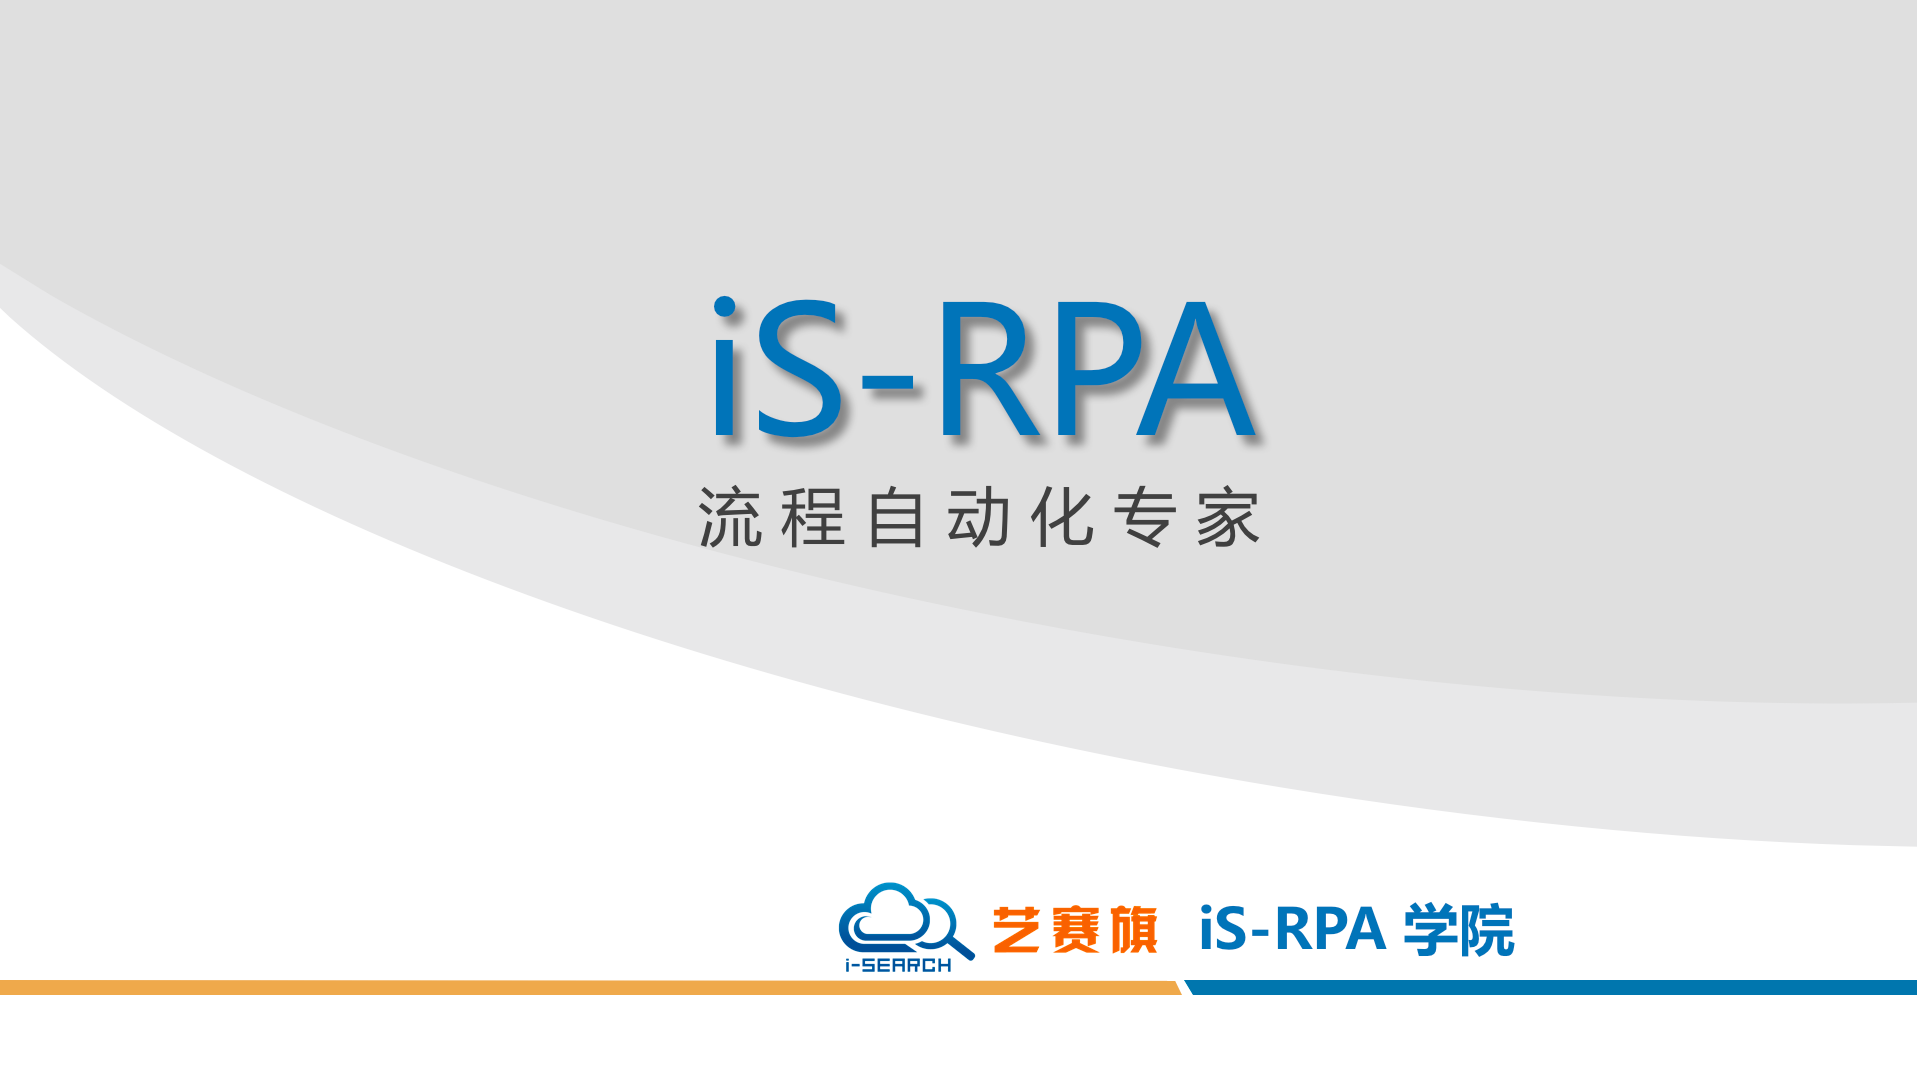 艺赛旗 iS-RPA-- 机器人共享复用 1- 上传和同步